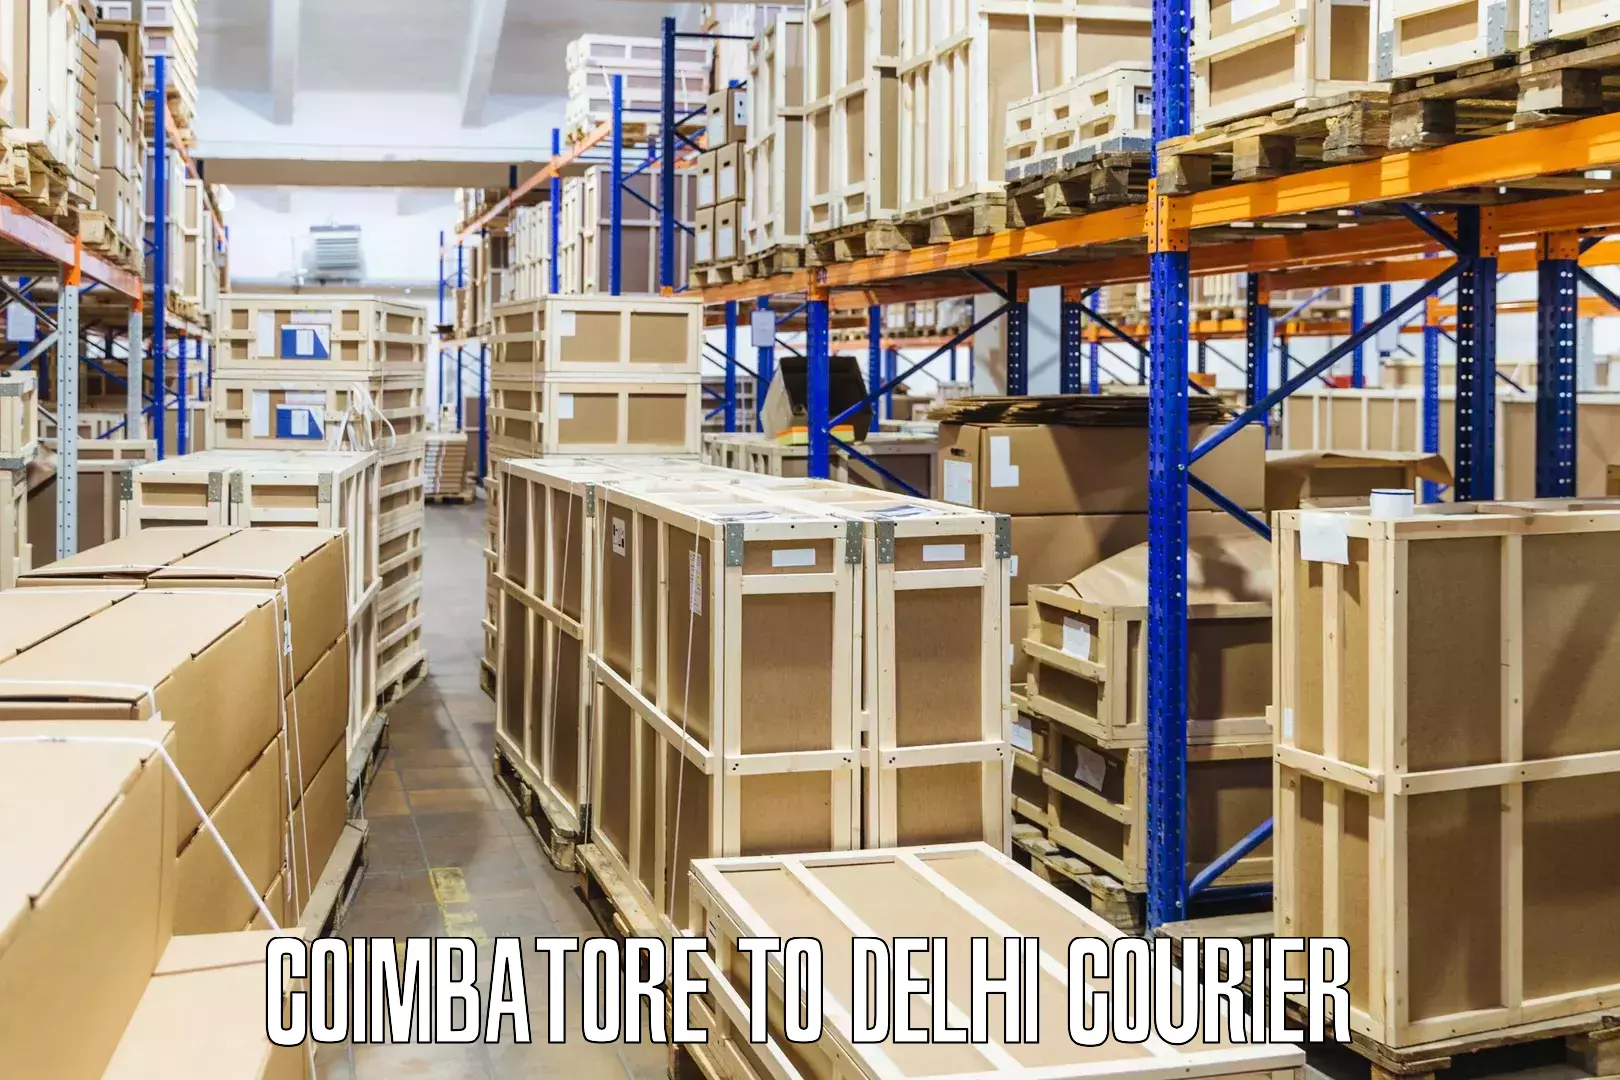 Expedited shipping methods in Coimbatore to Jawaharlal Nehru University New Delhi